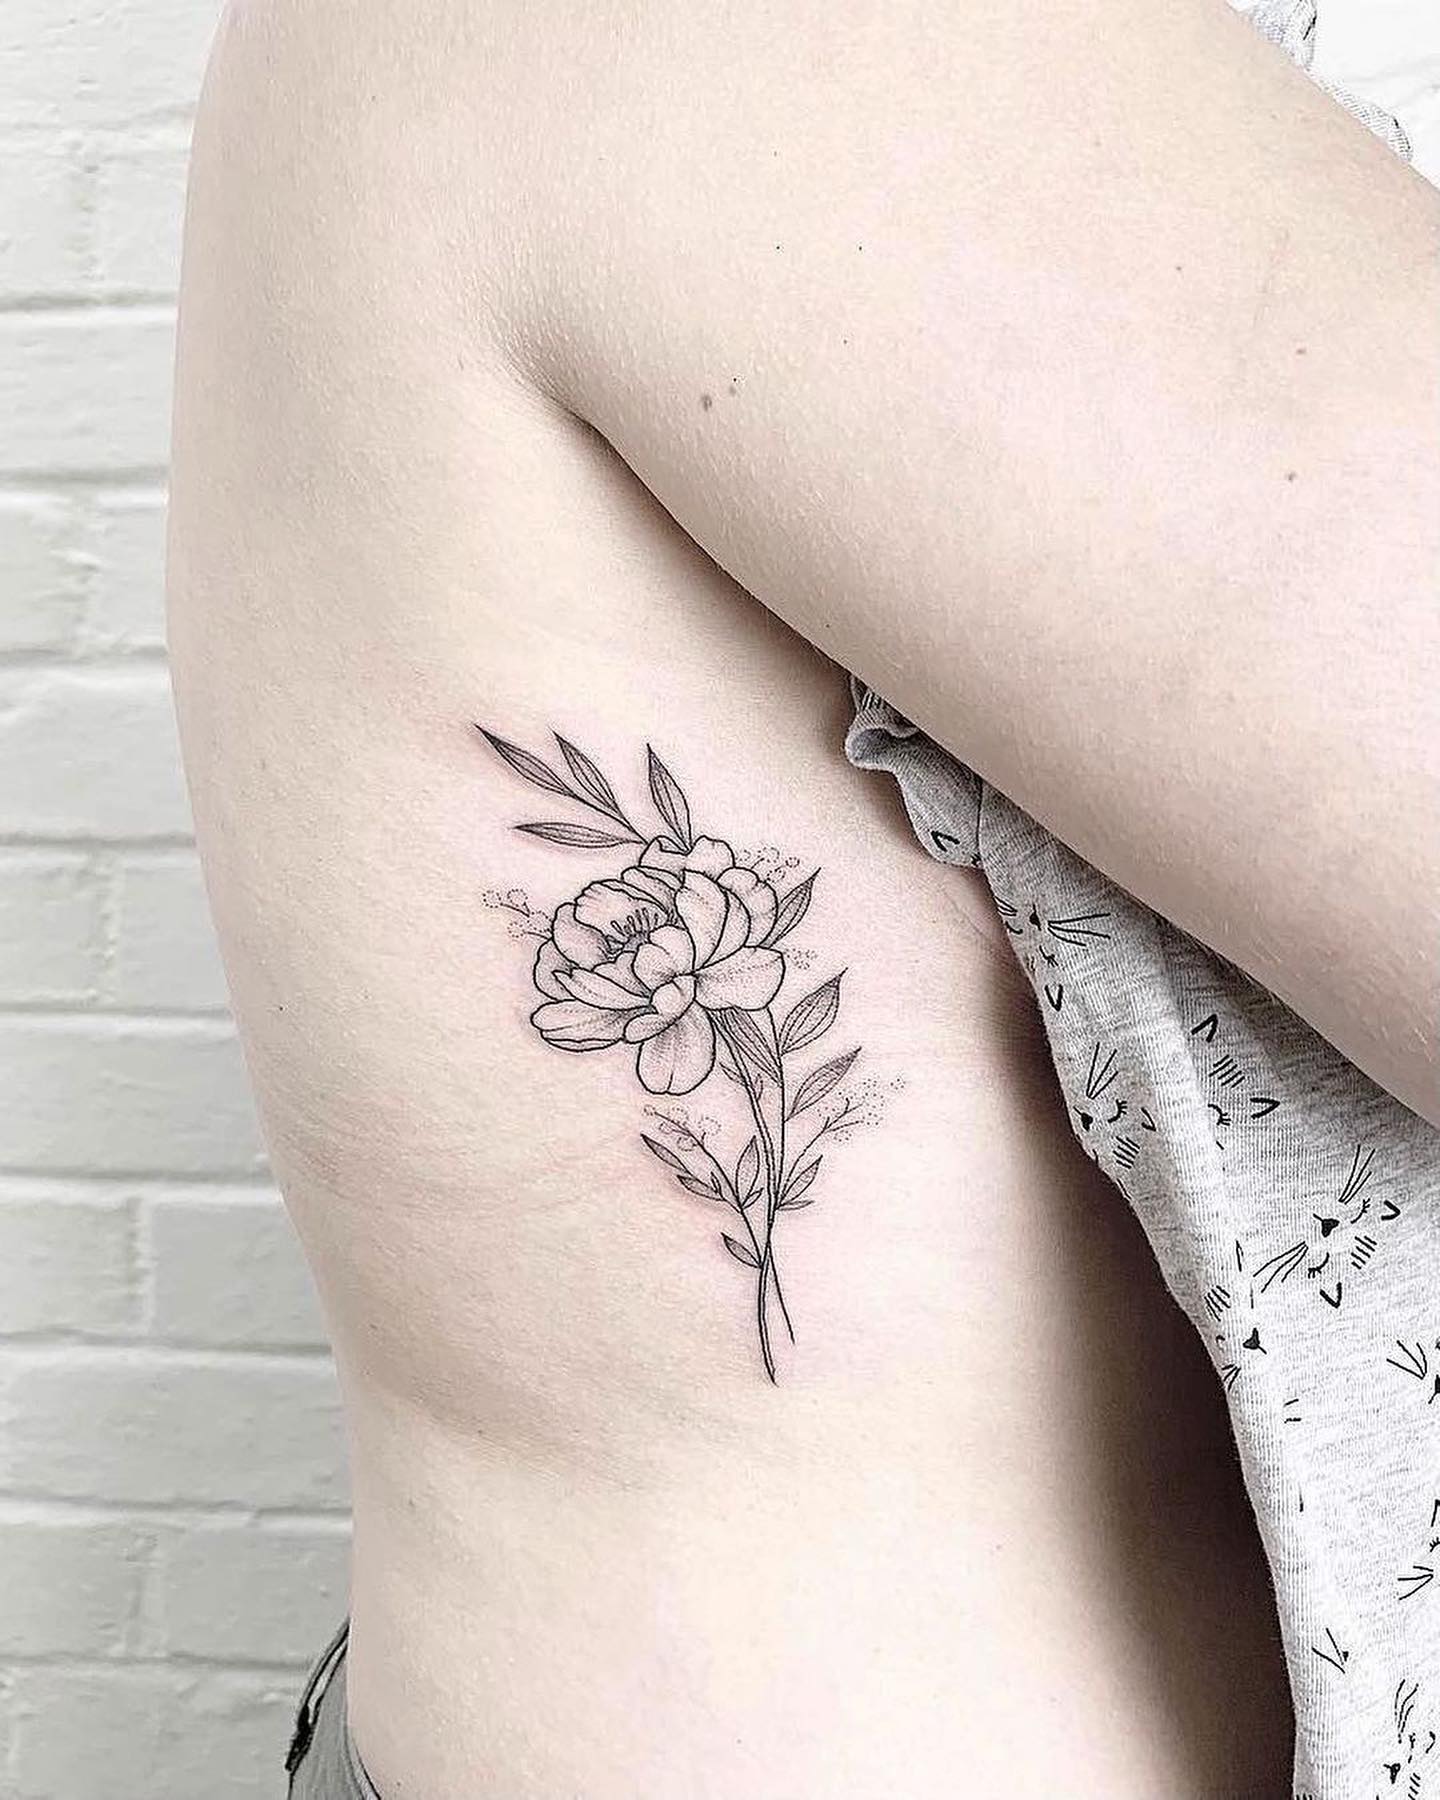 Dark elegant winter botanical flower tattoos on Craiyon